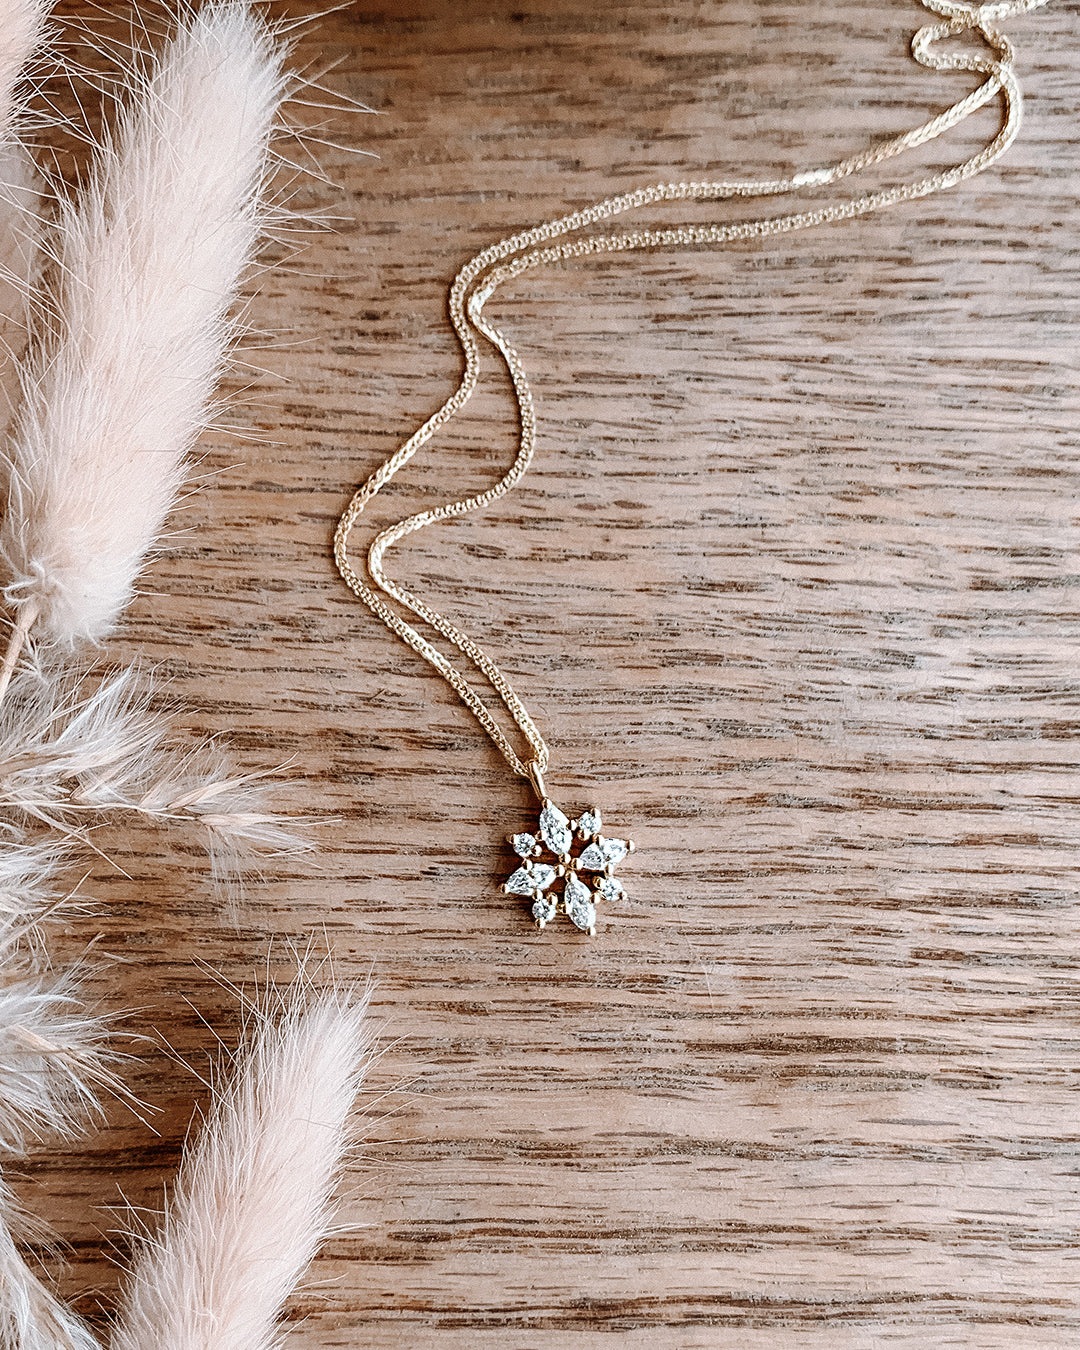 Diamond Snowflake Necklace with Lab Grown Diamonds